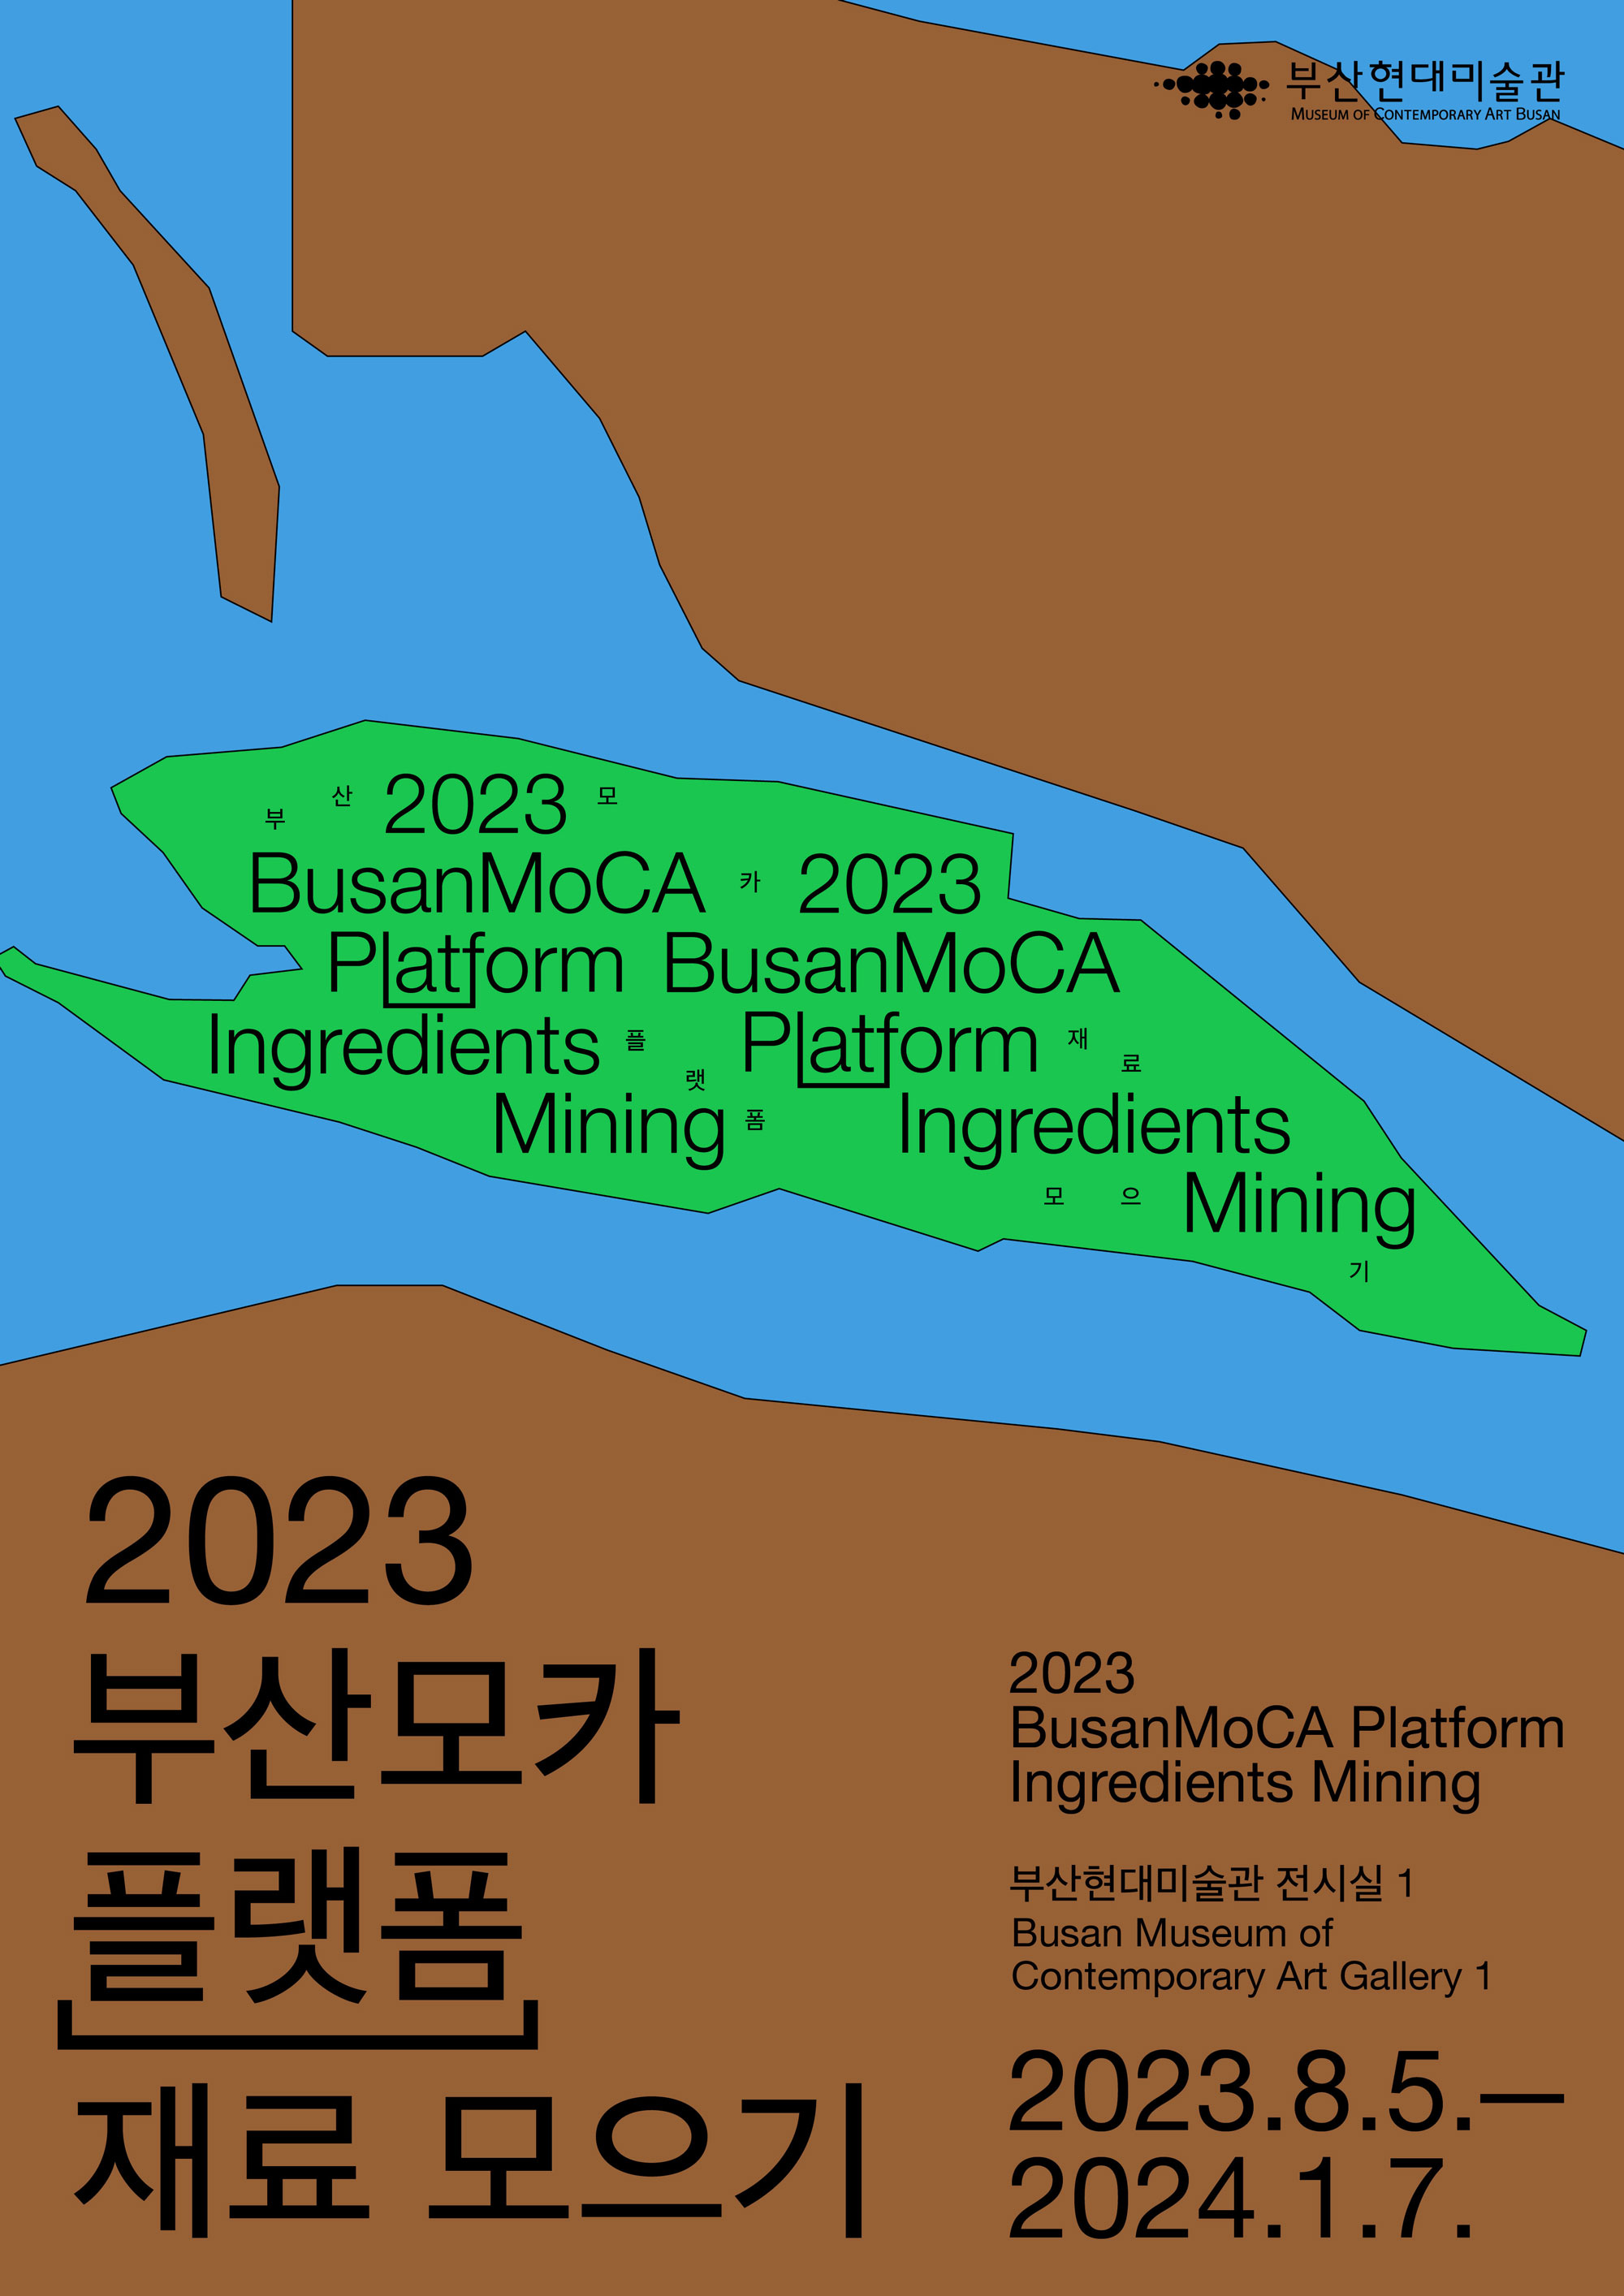 (Web) Poster_Busan MoCA Platform_Ingredients Mining_Ver